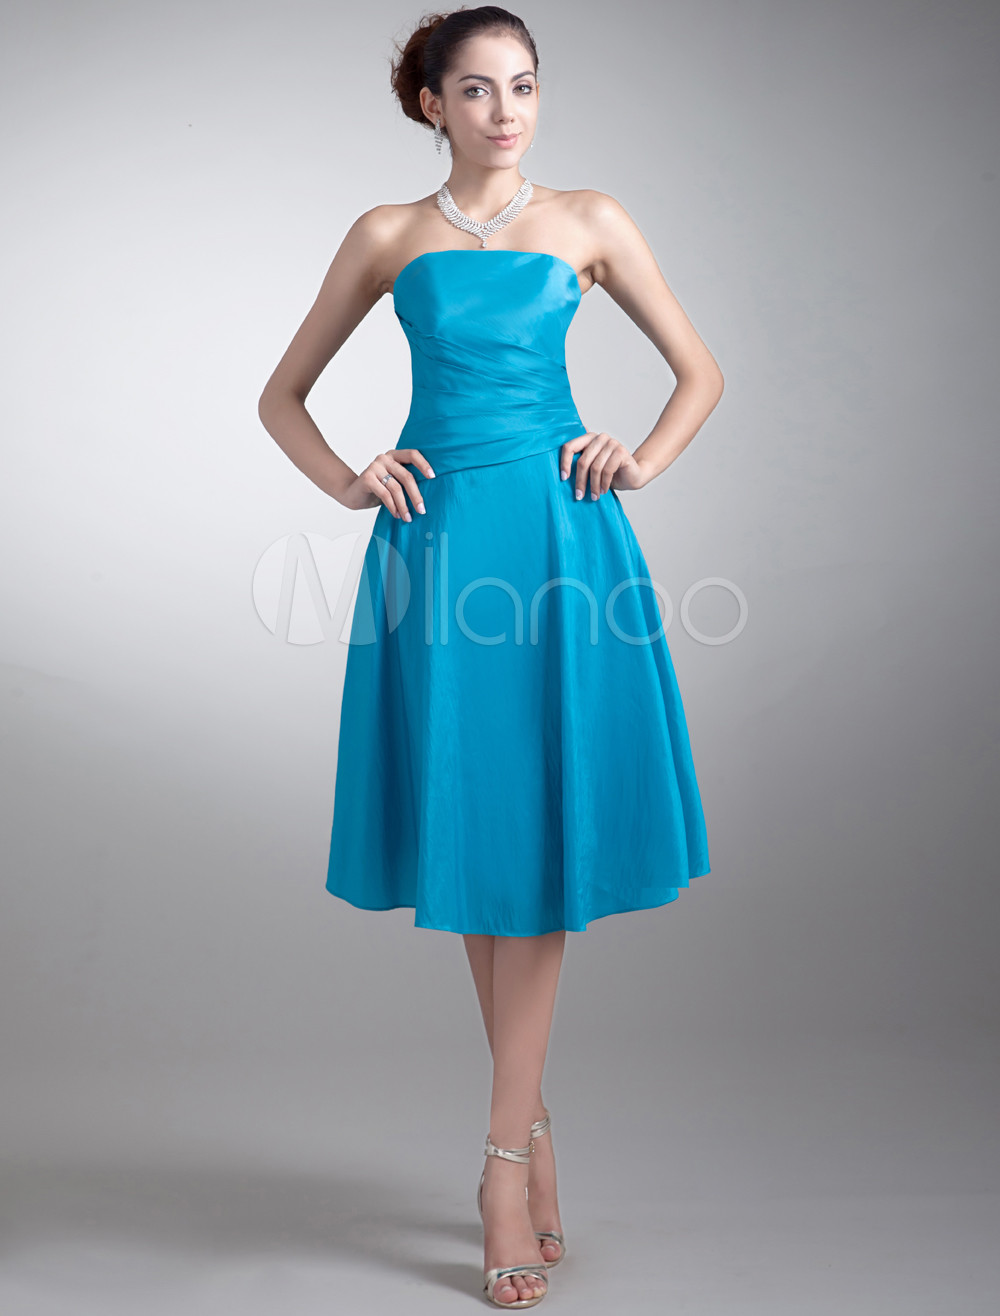 A-line Blue Taffeta Strapless Tea-Length Bridesmaid Dress For Wedding ...